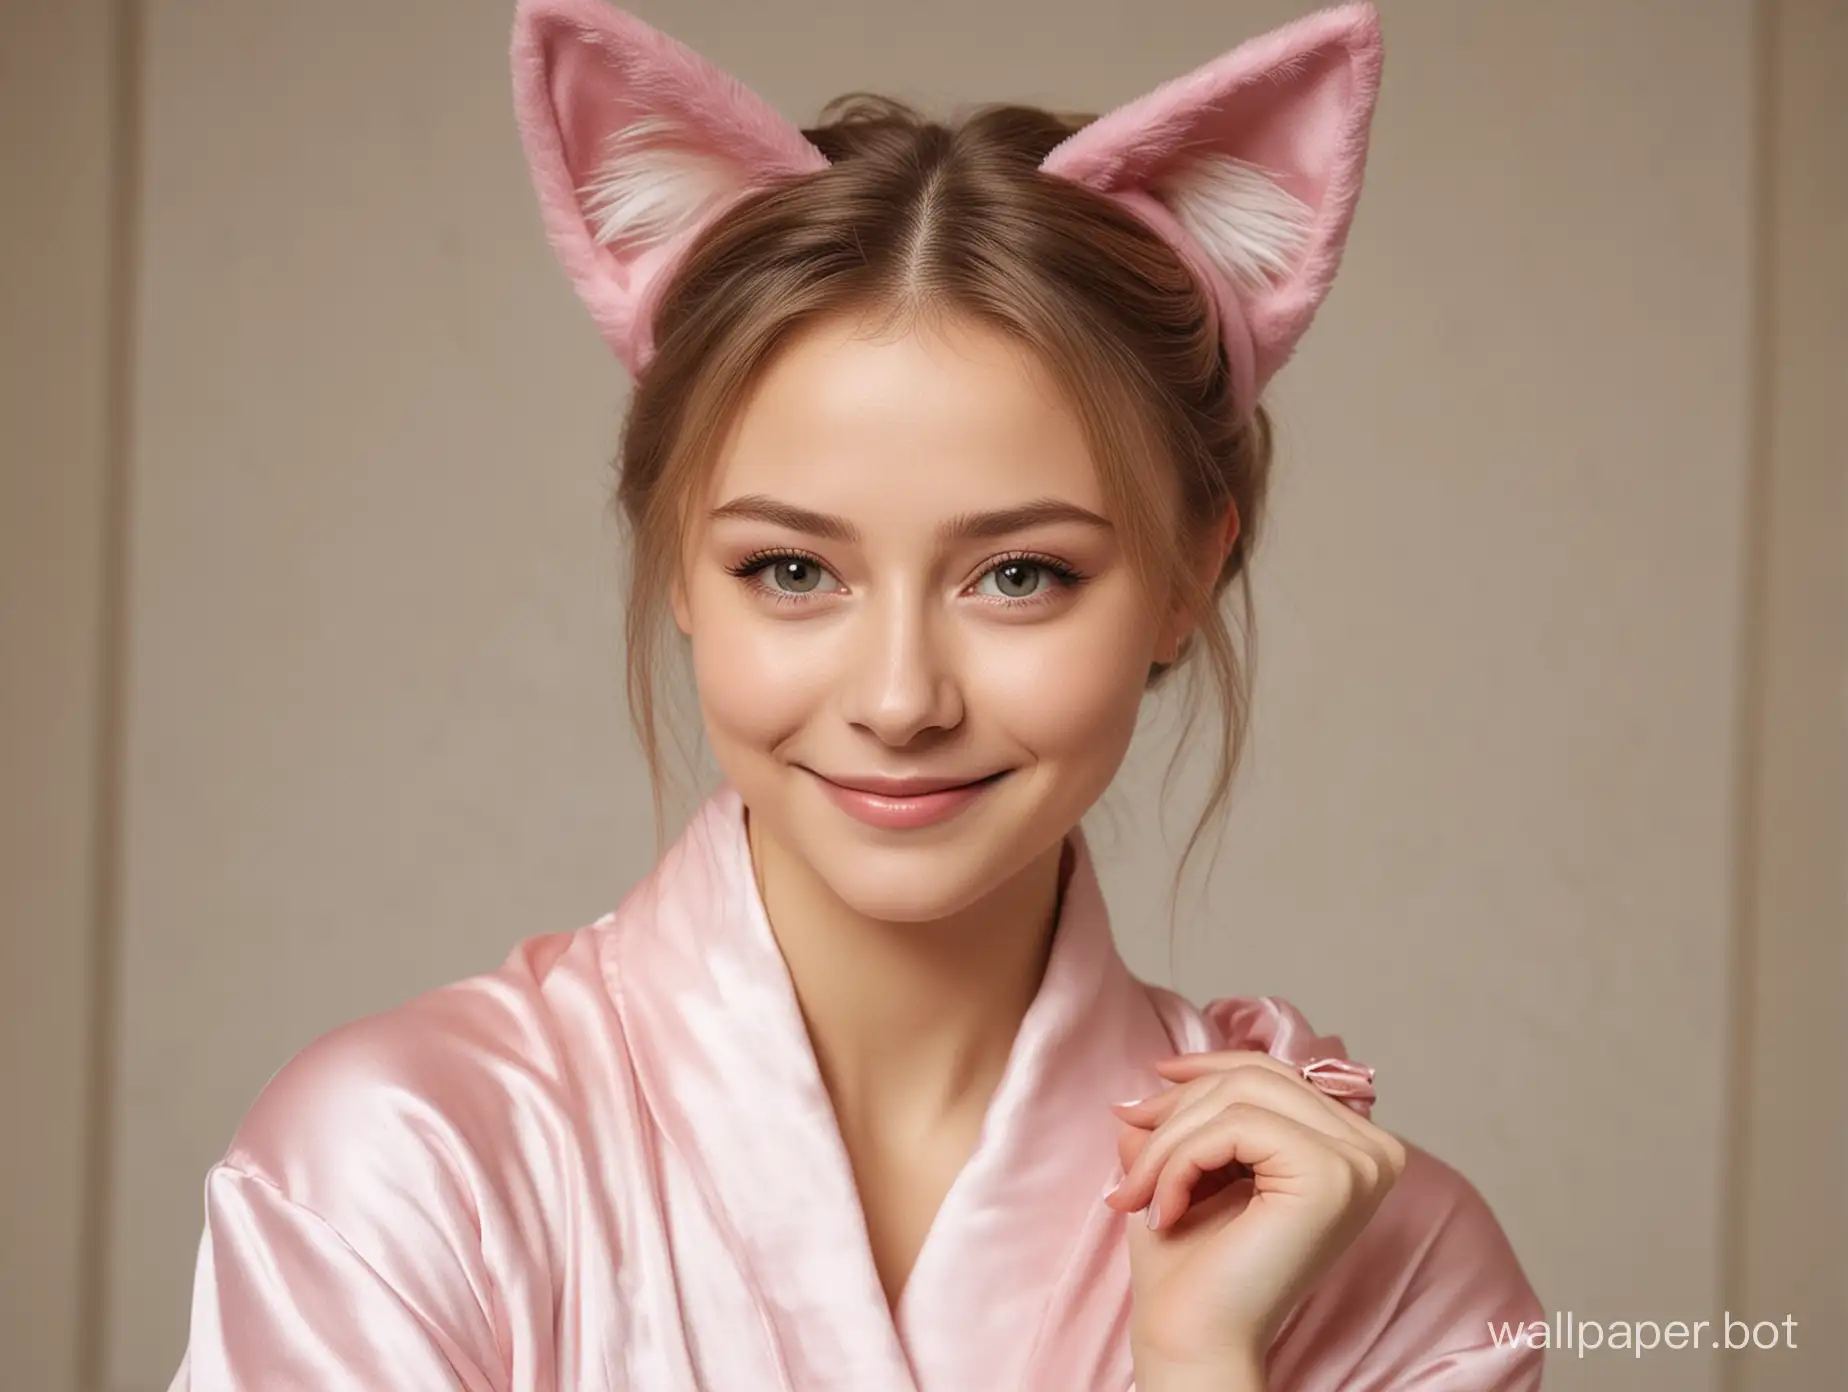 Юлия Липницкая в шелковом халате с кошачьими ушками улыбается